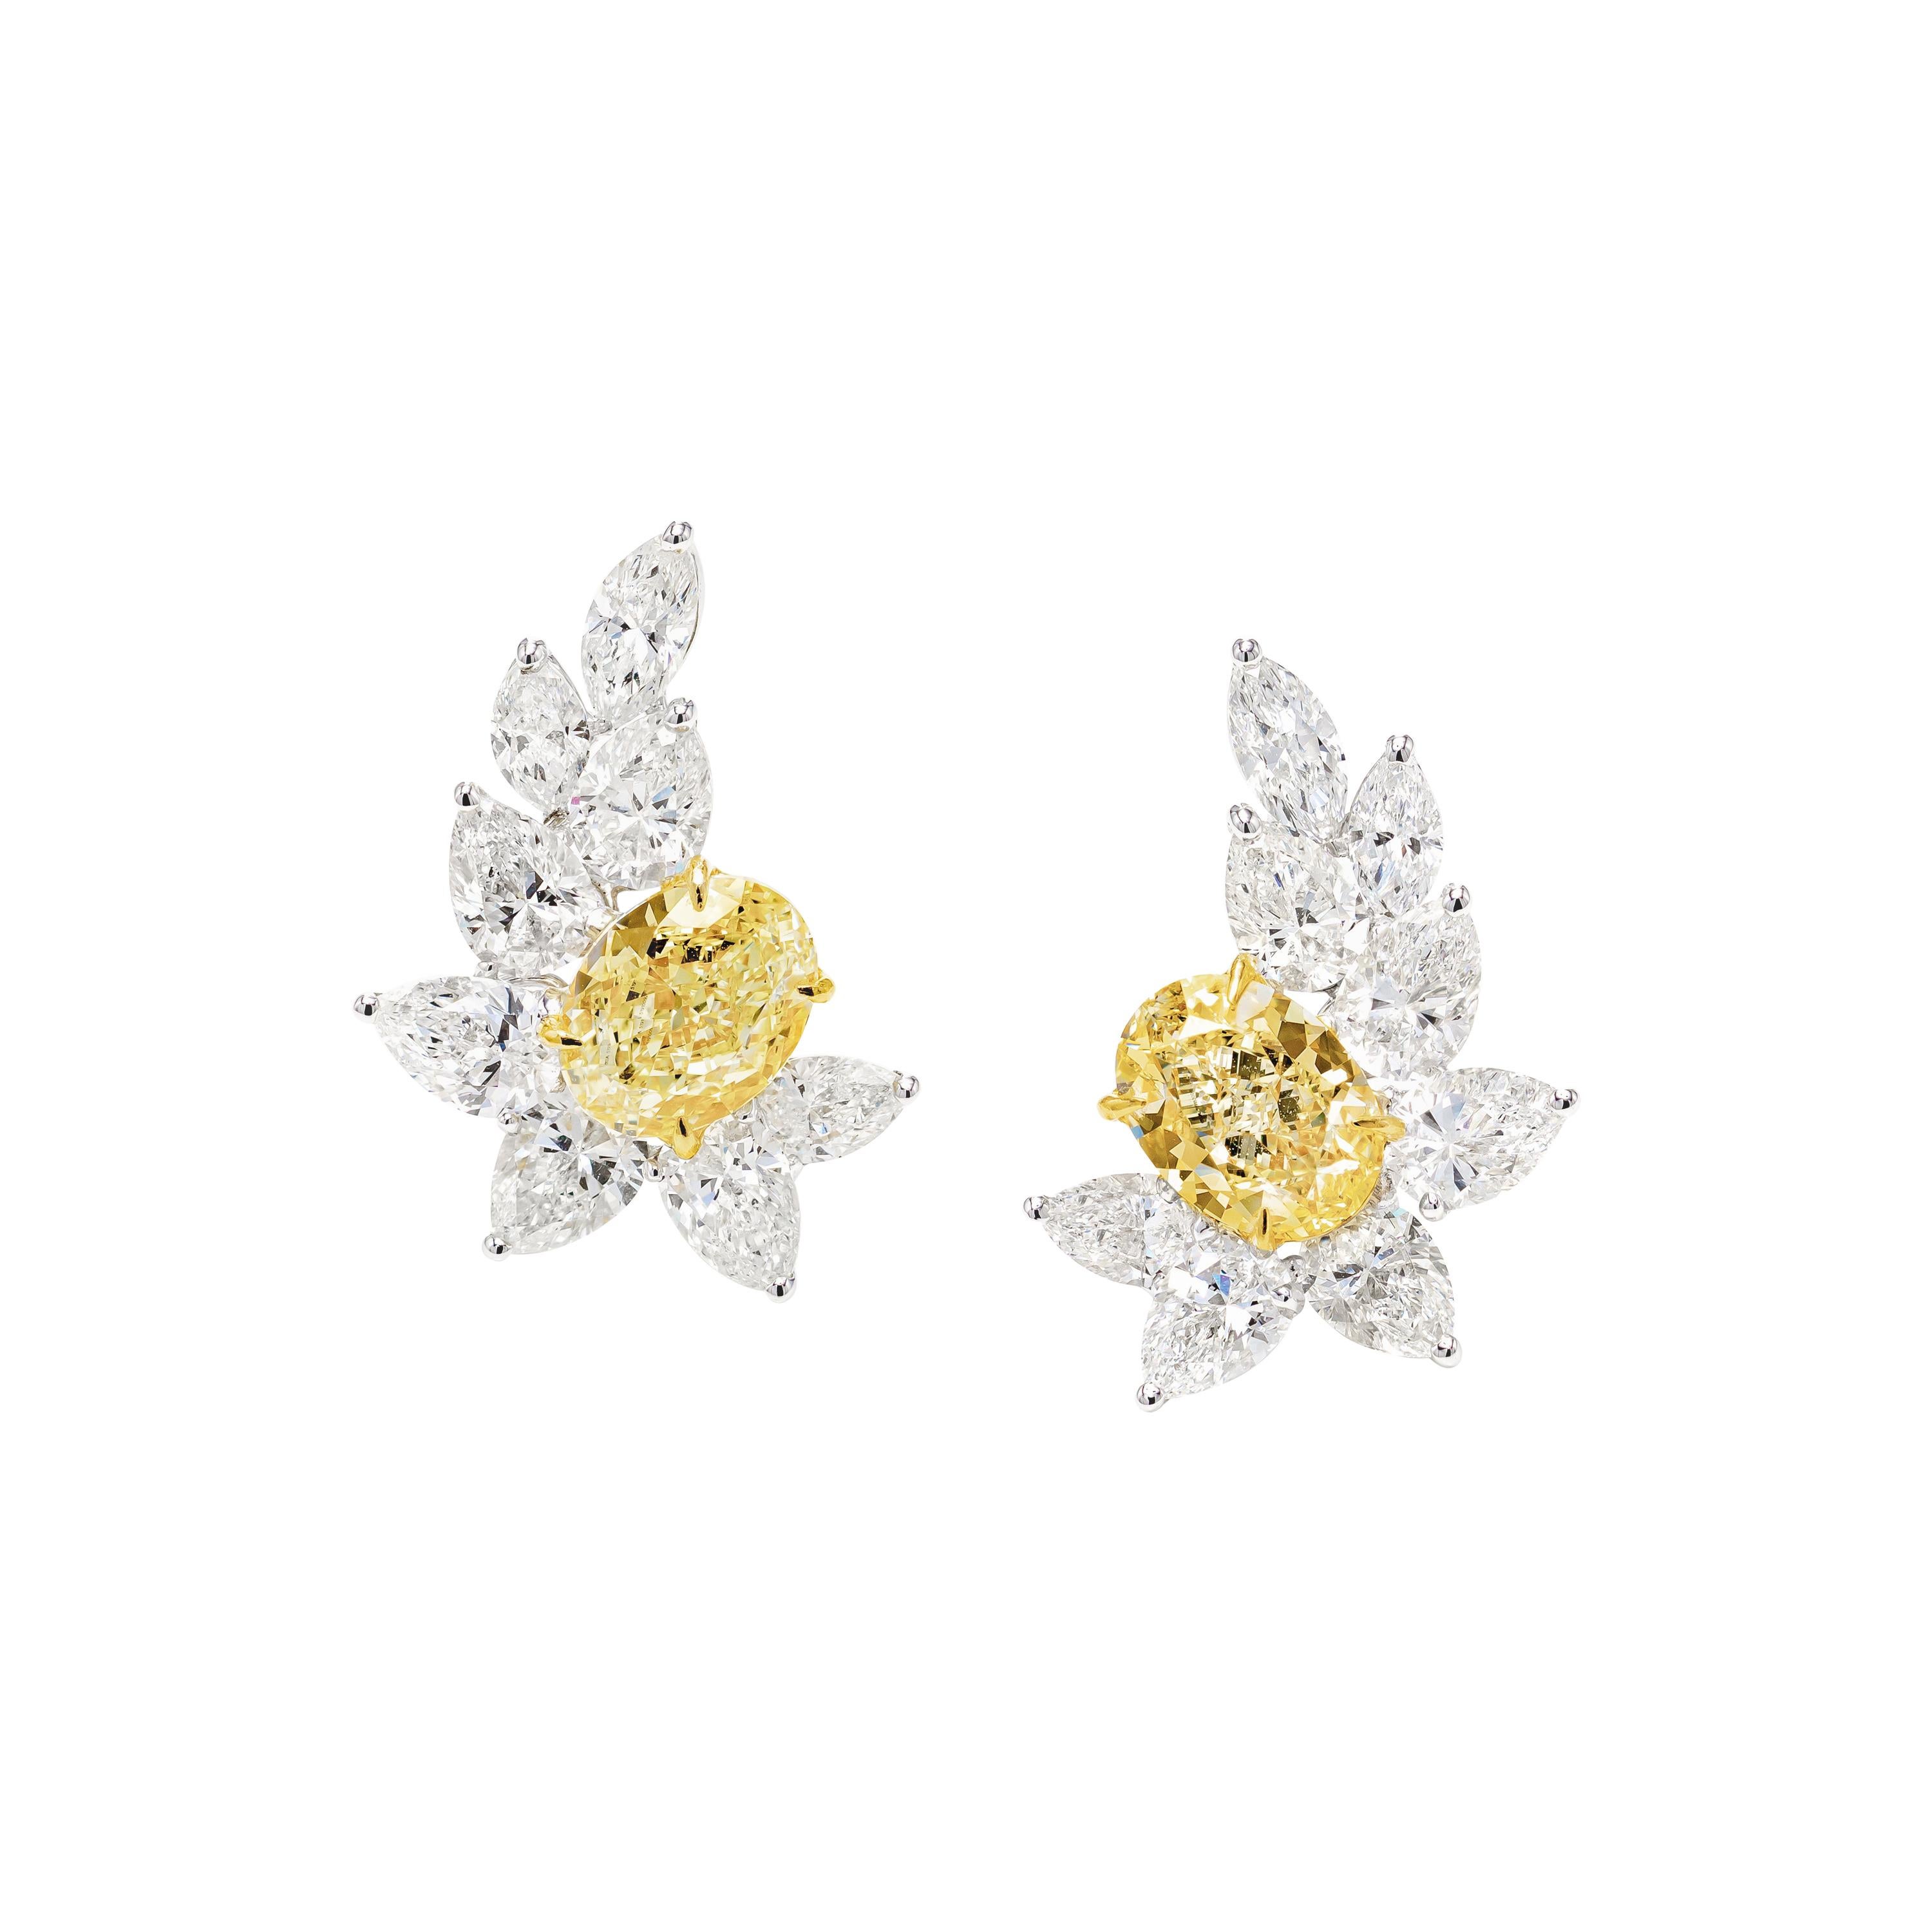 GIA Certified 7.09 Carat Fancy Yellow Oval Diamond Earrings in 18K Gold For Sale